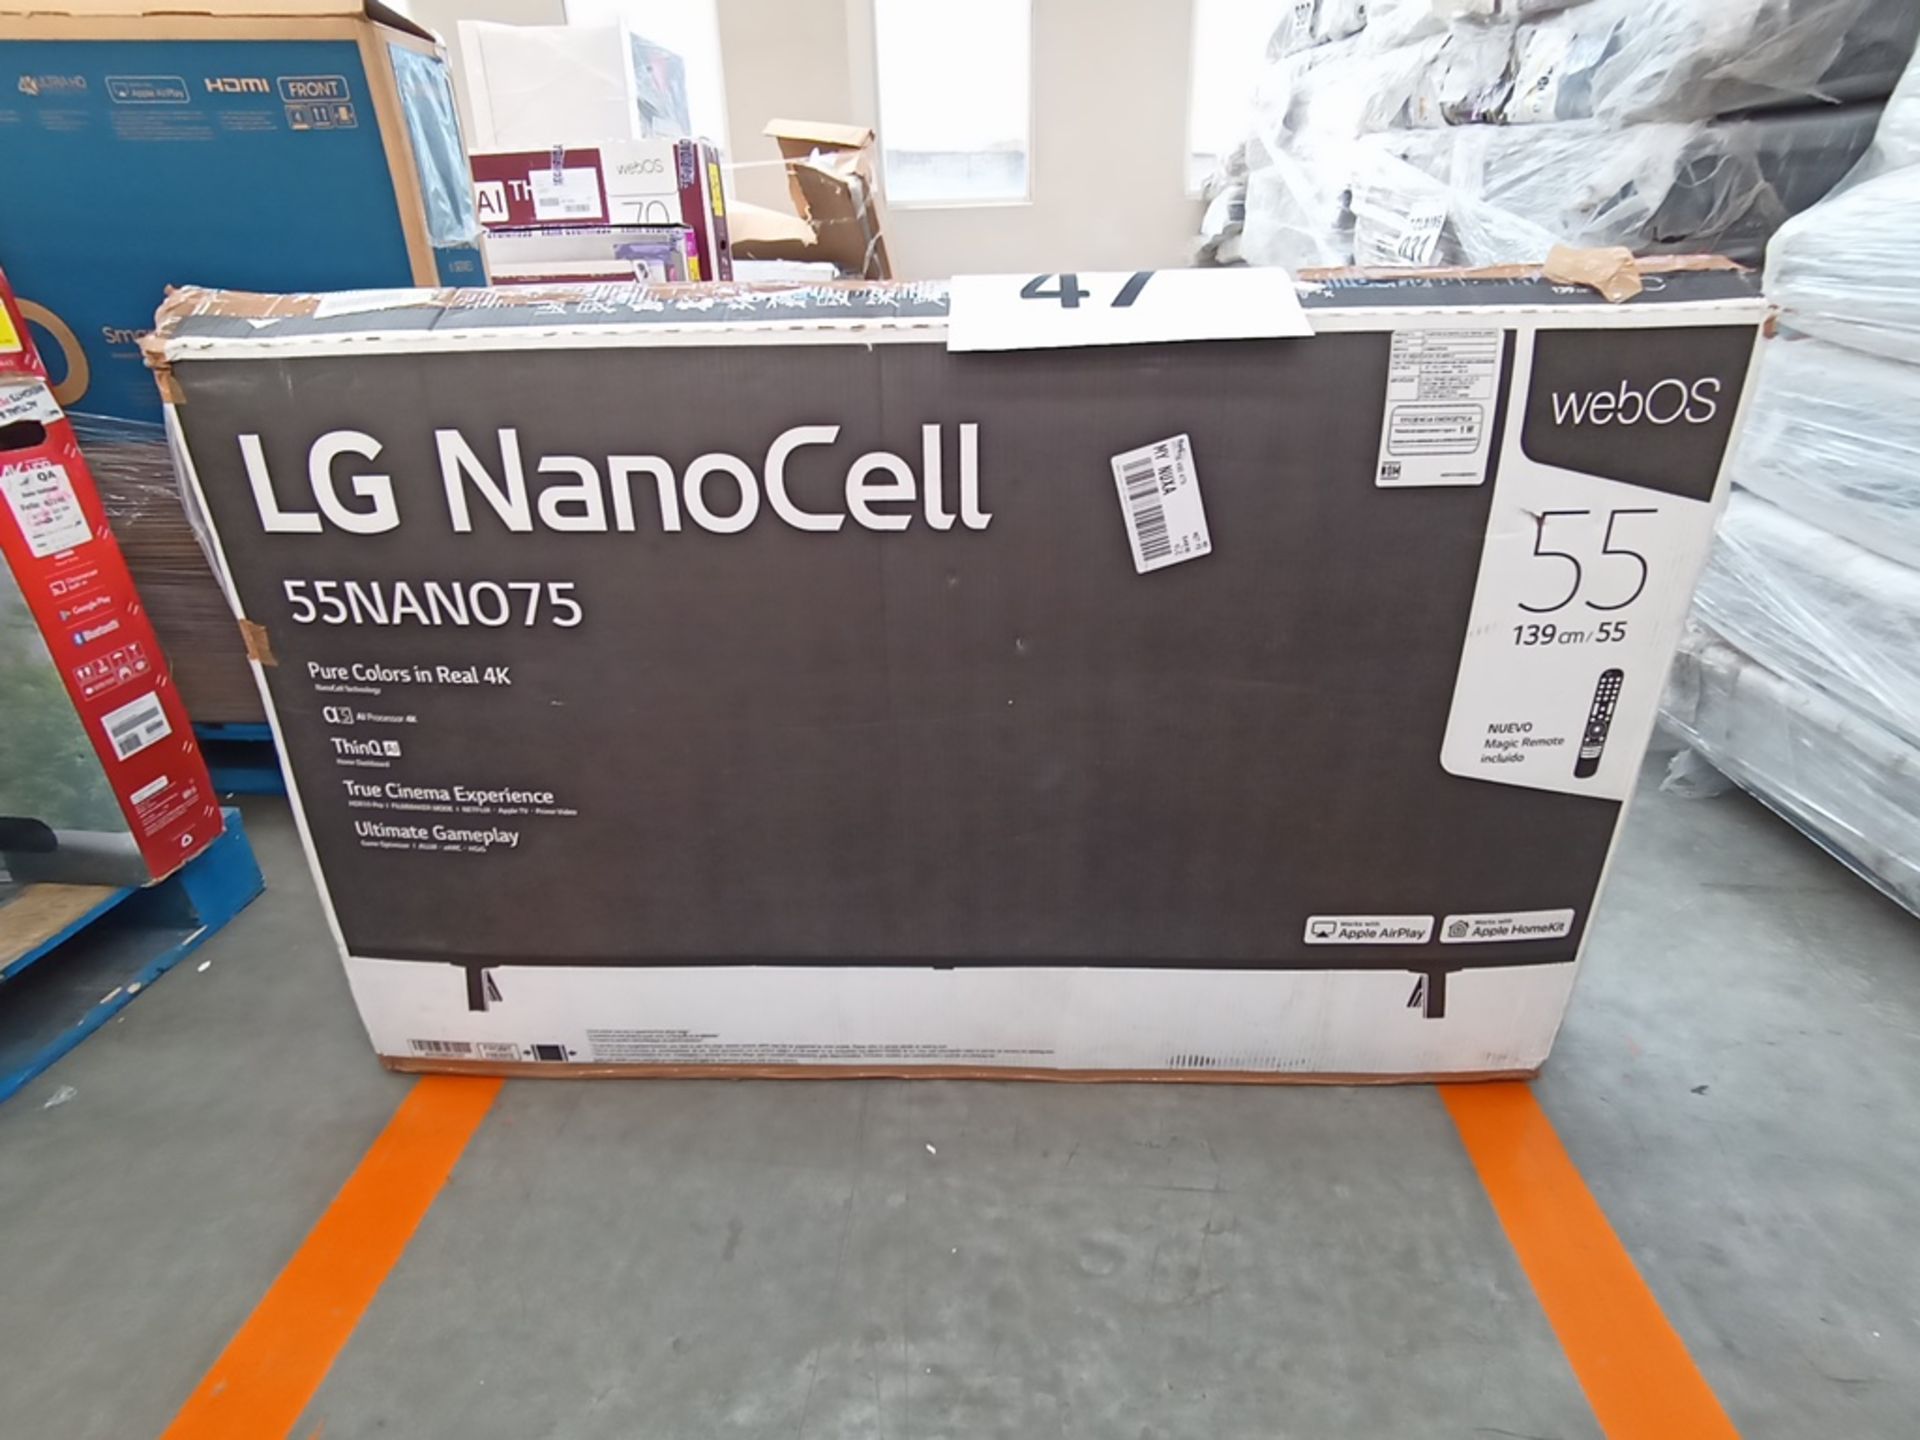 1 Pantalla de 55" Marca LG, Modelo NanoCel, Serie 110MXGL92943, No se asegura su funcionamiento, Pu - Image 4 of 14